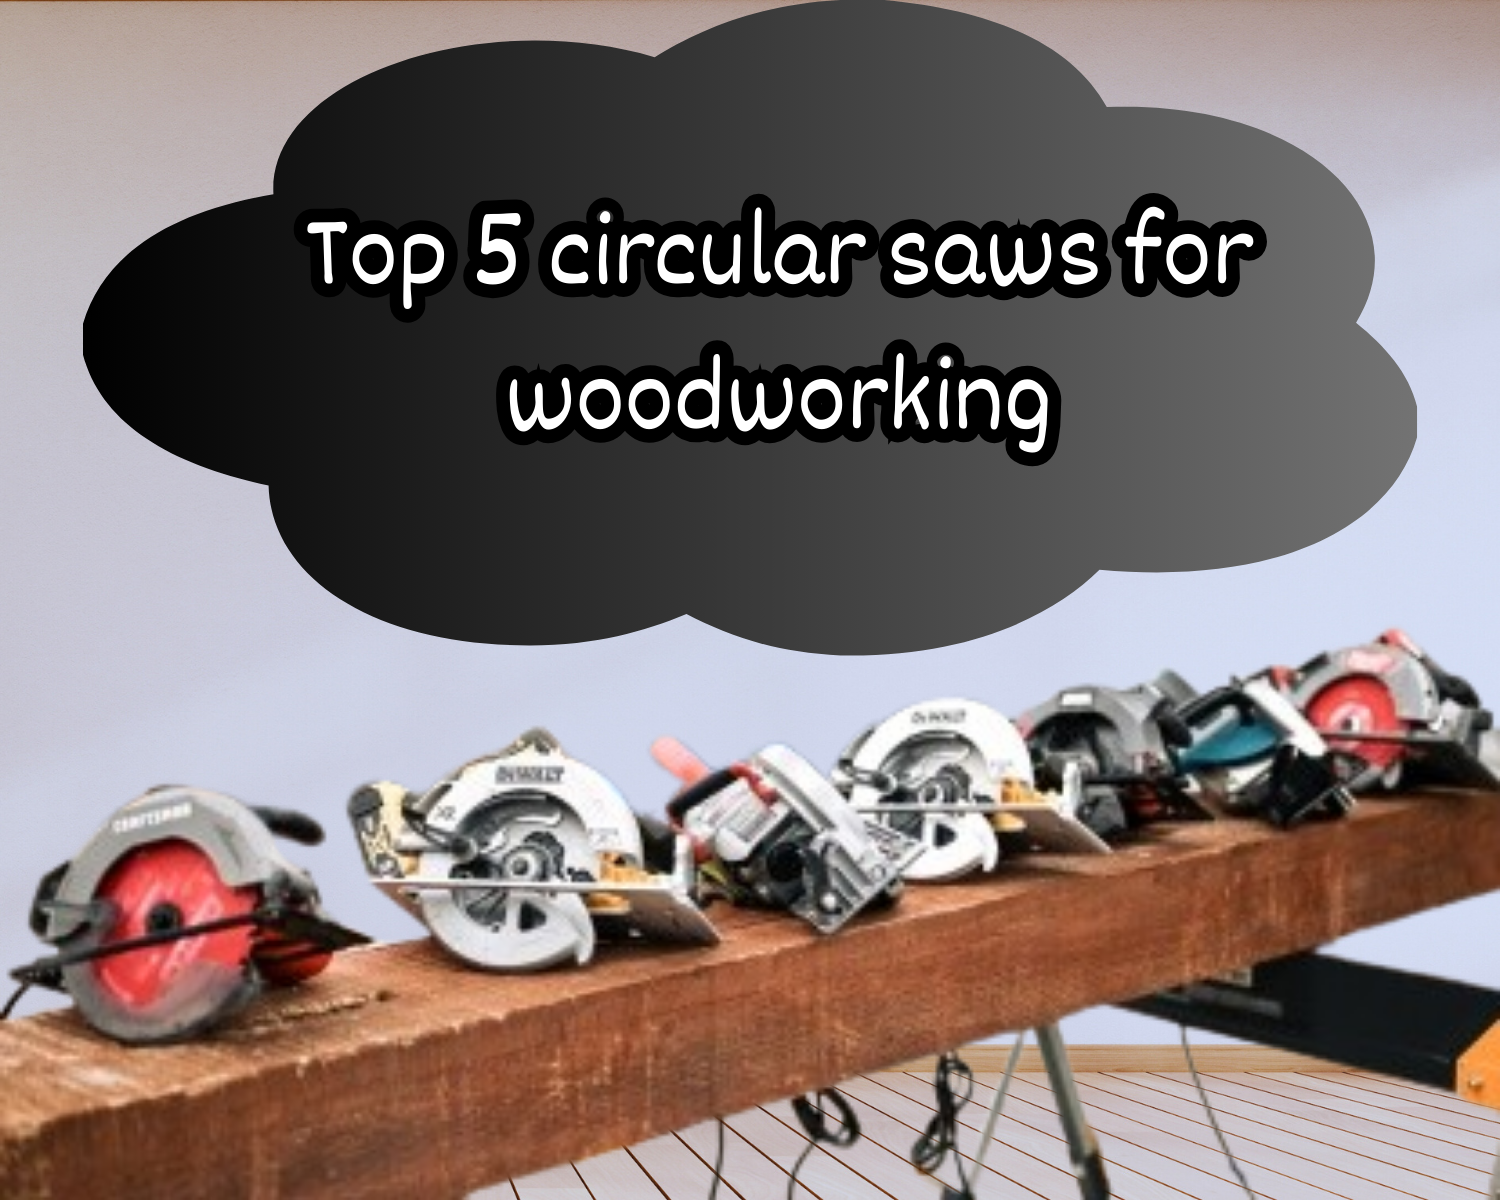 Circular saws